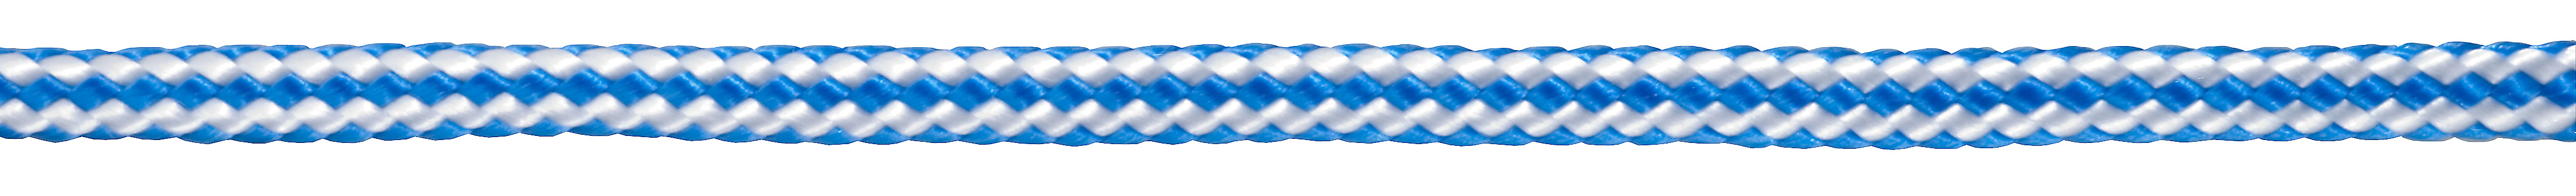 Connex Polypropylen-Seil 16-fach geflochten, Blau/Weiß ø 6 mm